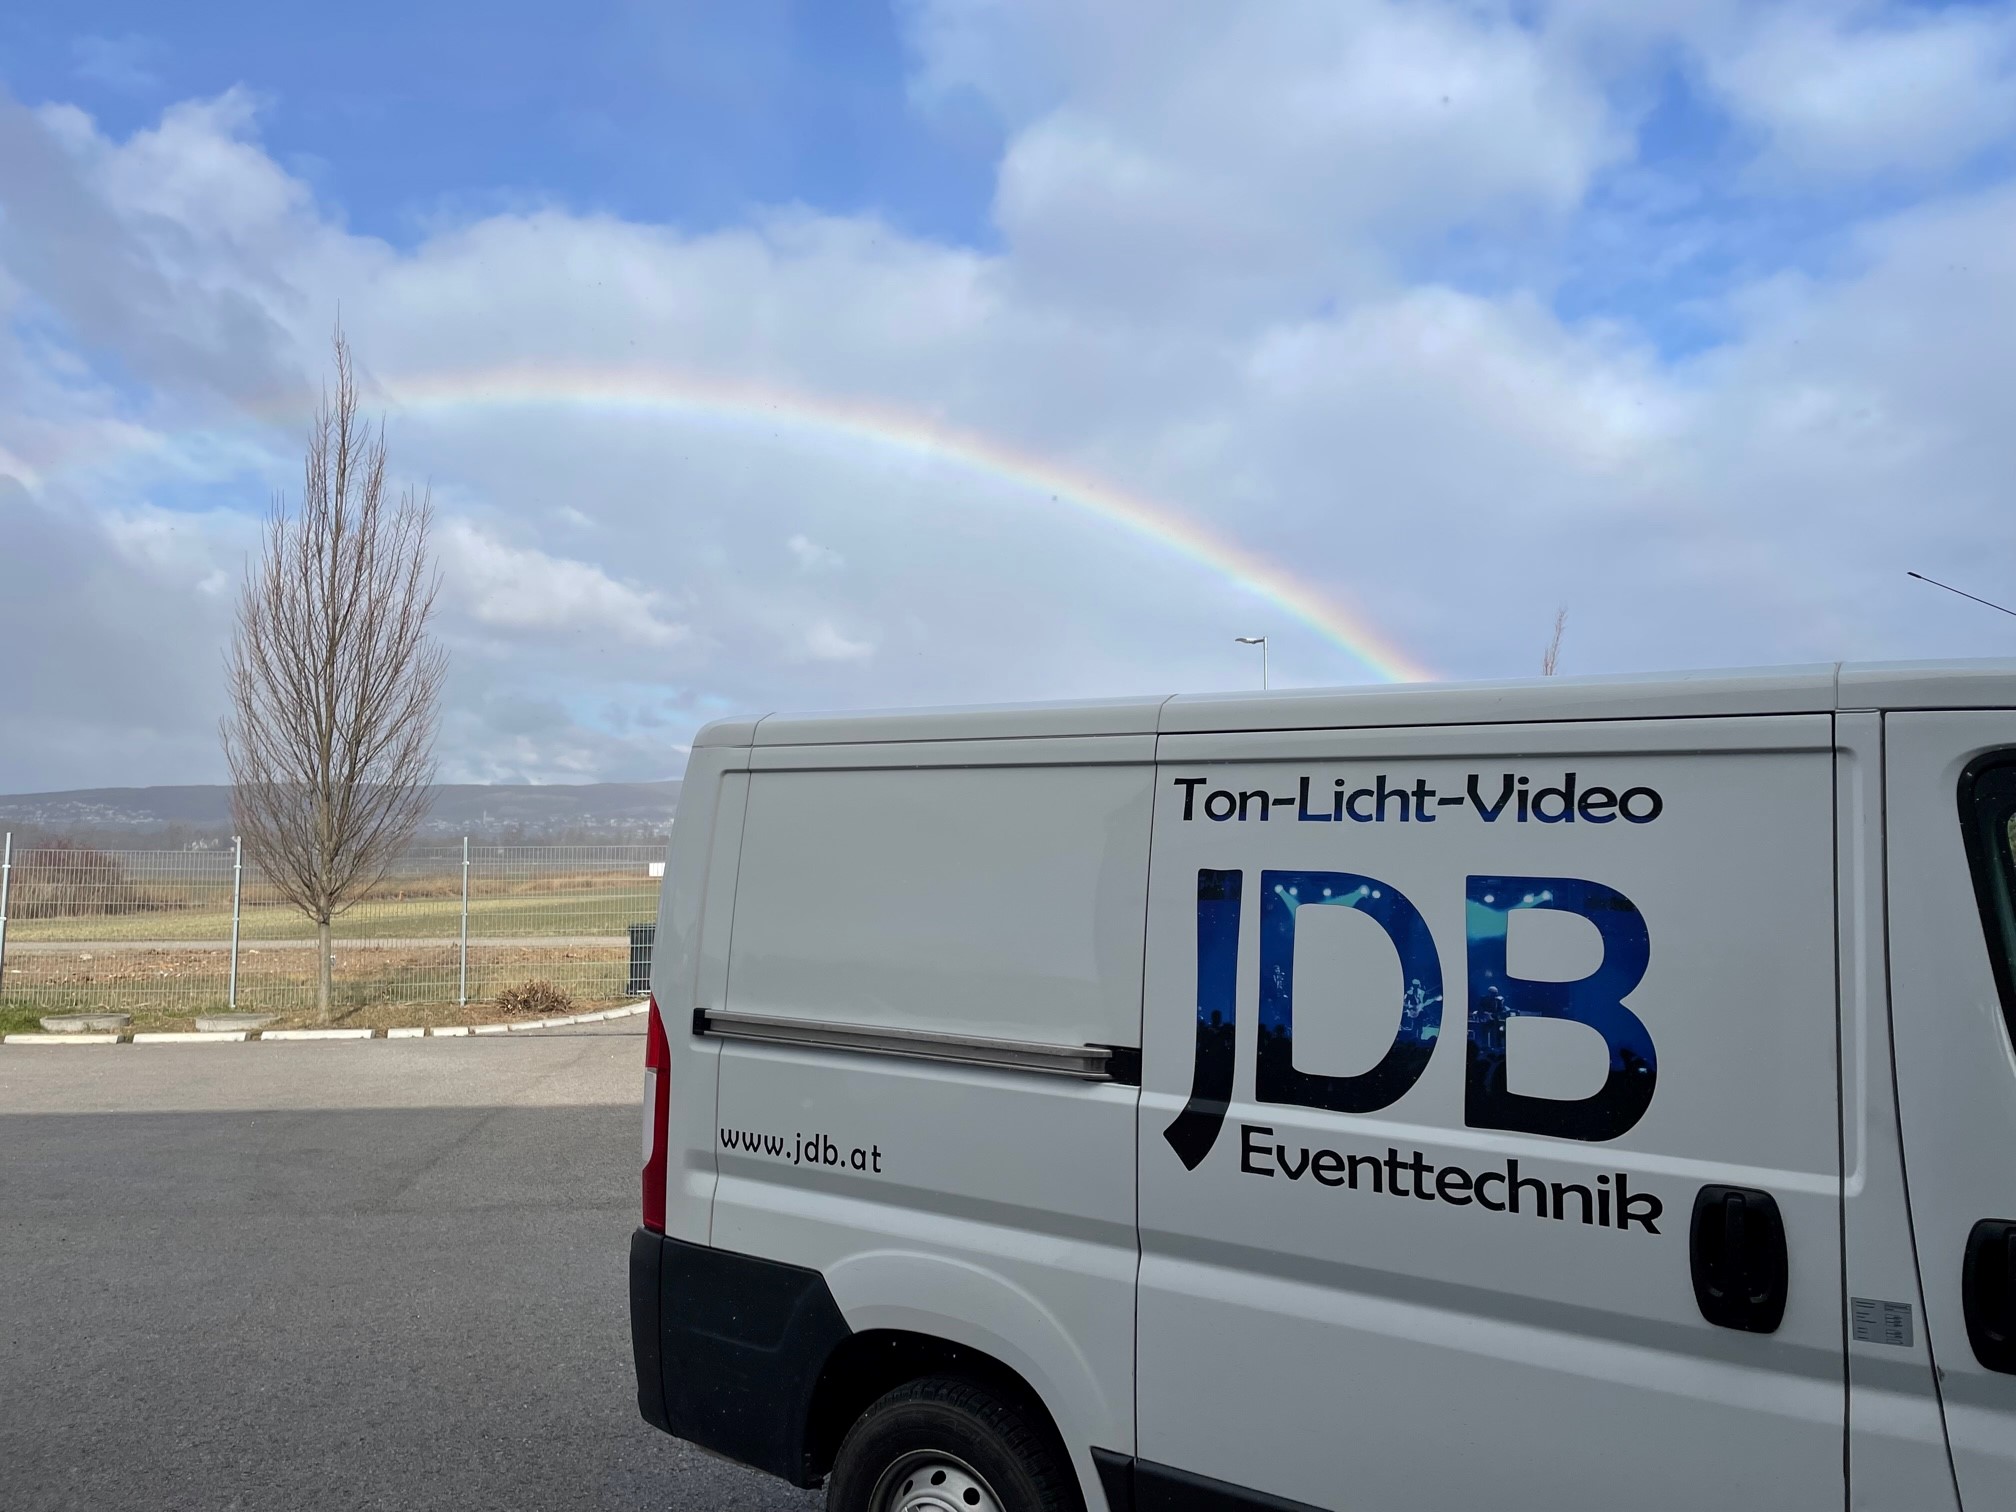 Fahrzeug mit "JDB" Beschriftung mit einem Regenbogen im Hintergrund